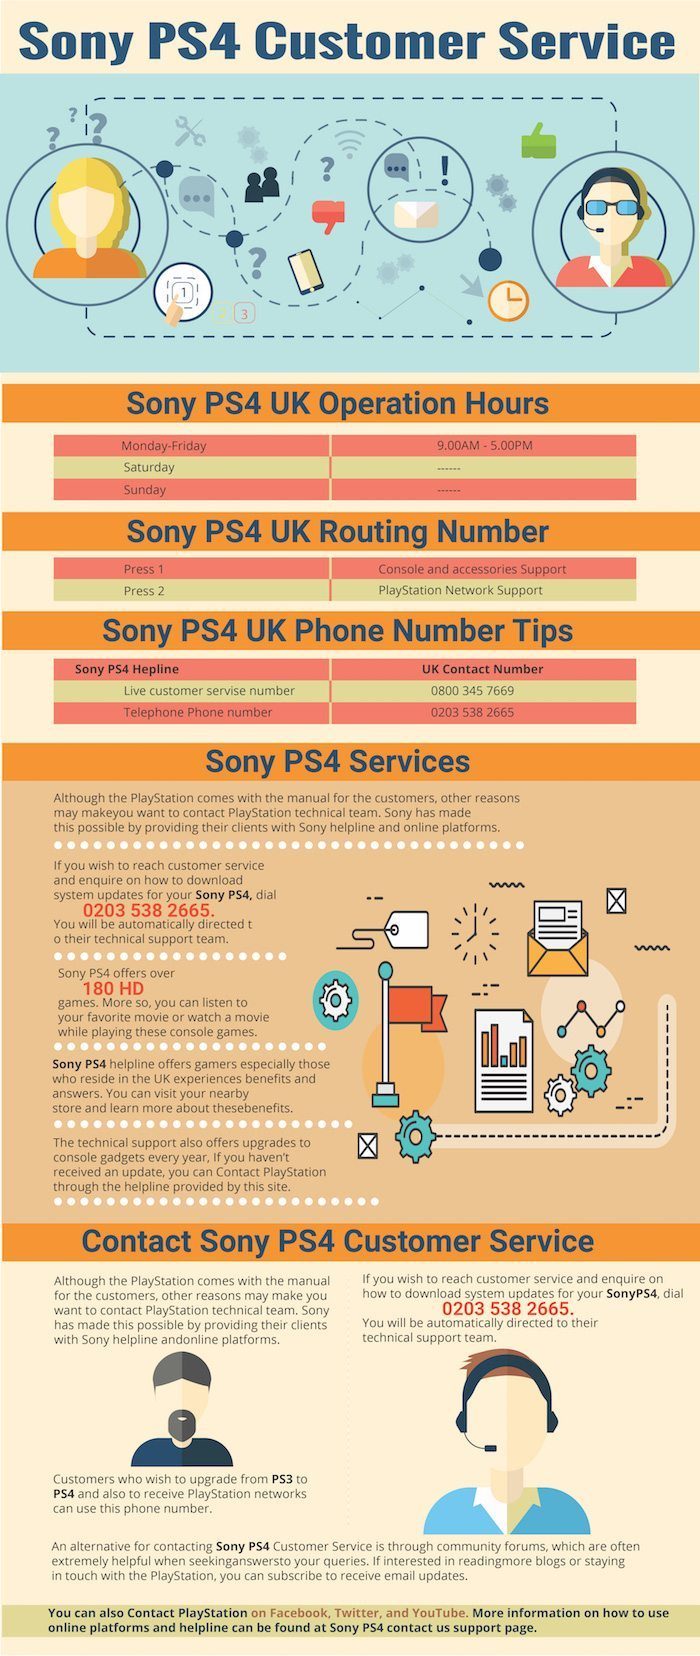 SONY PS4 Customer Service